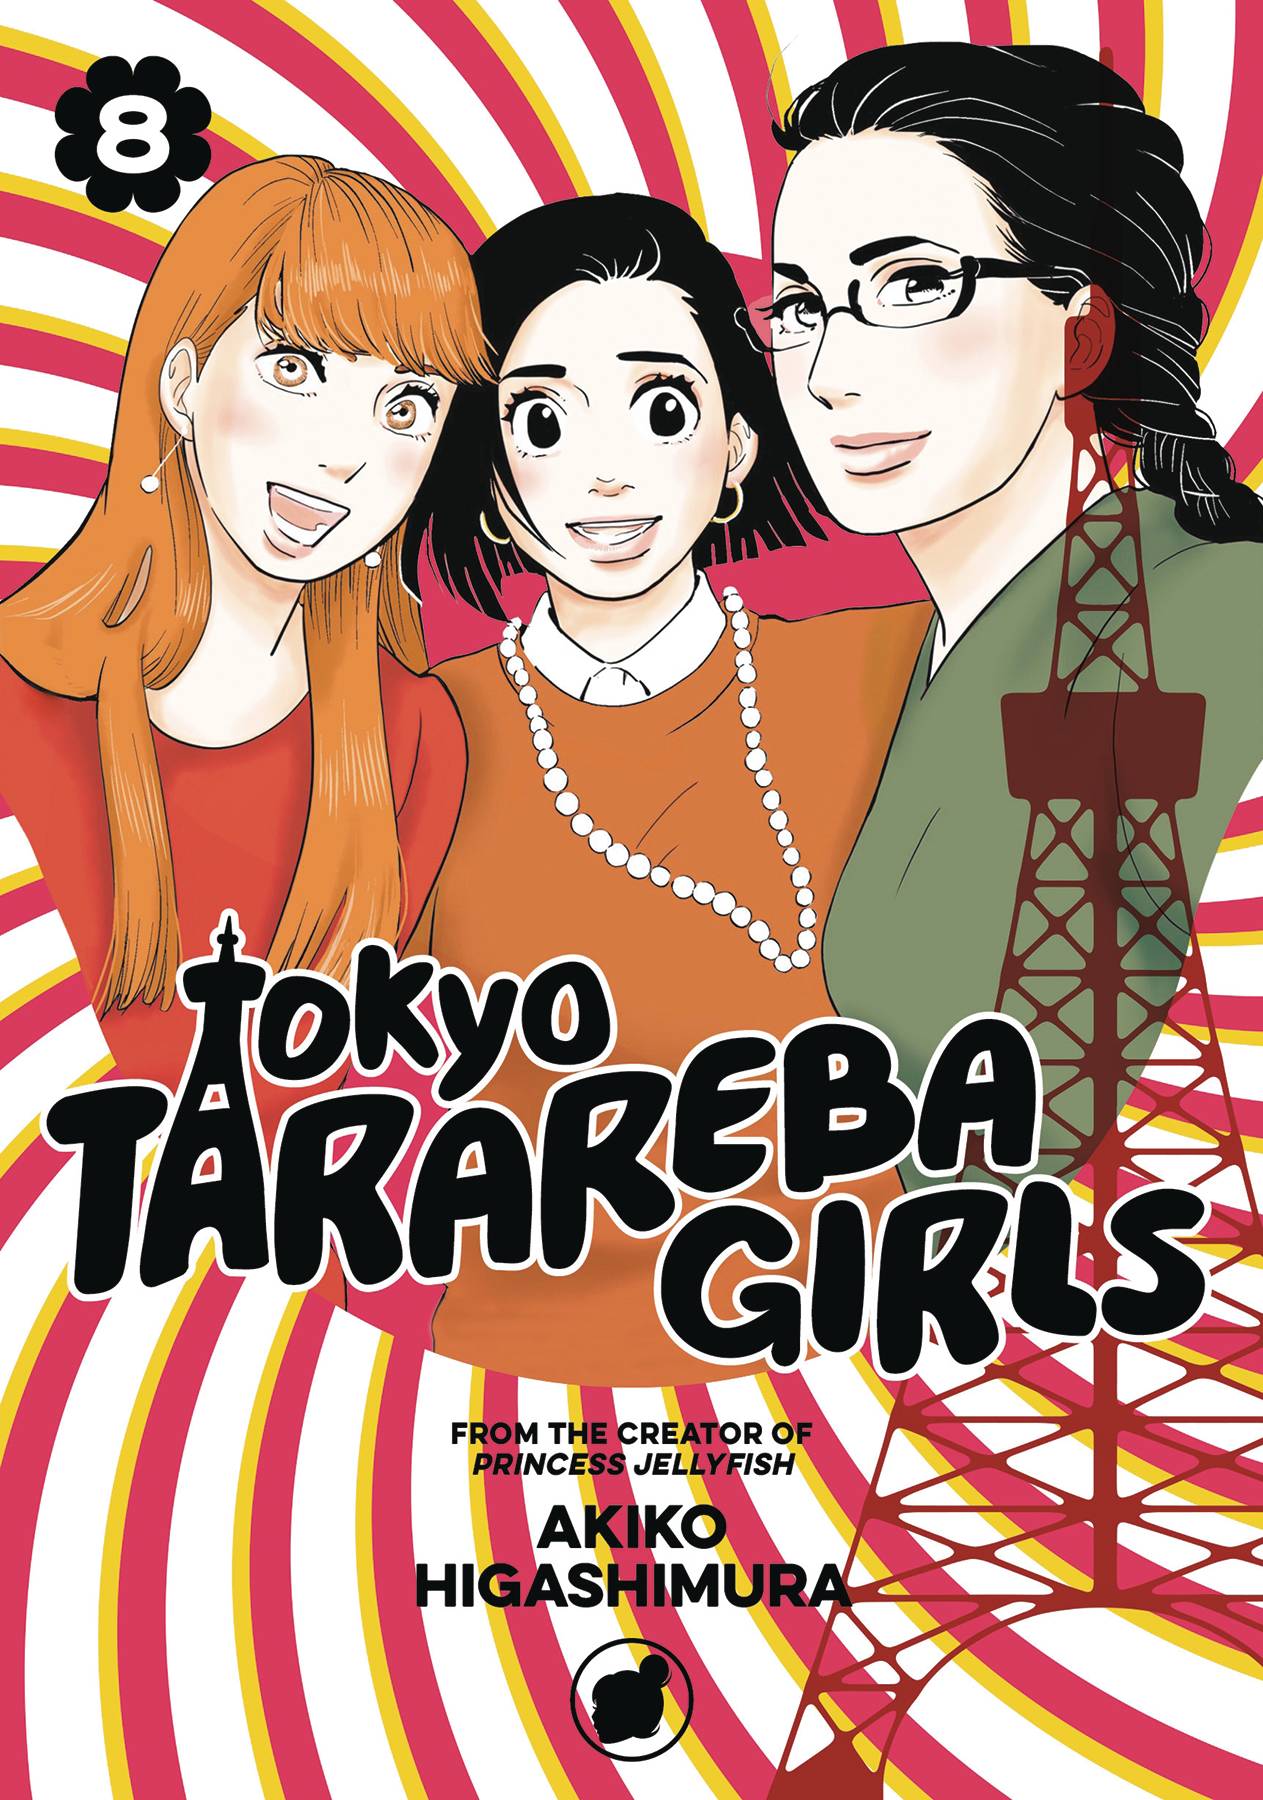 Tokyo Tarareba Girls Manga Volume 8 (Of 9)